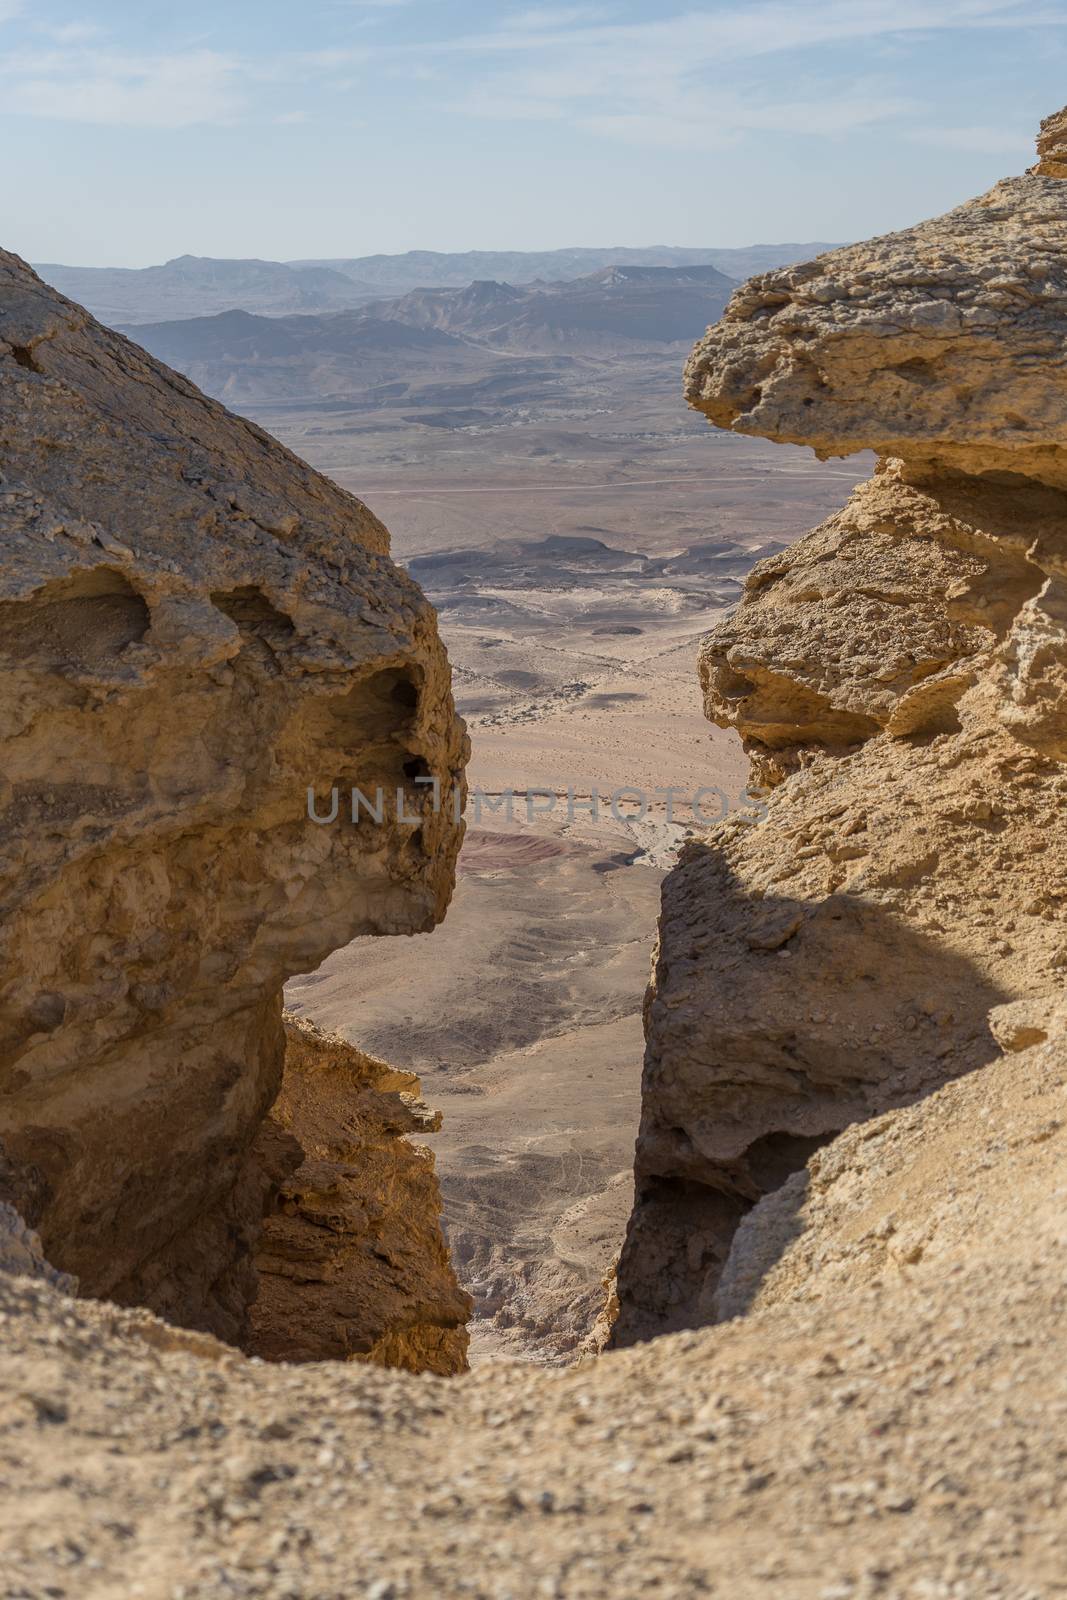 Hiking in Negev desert of Israel by javax